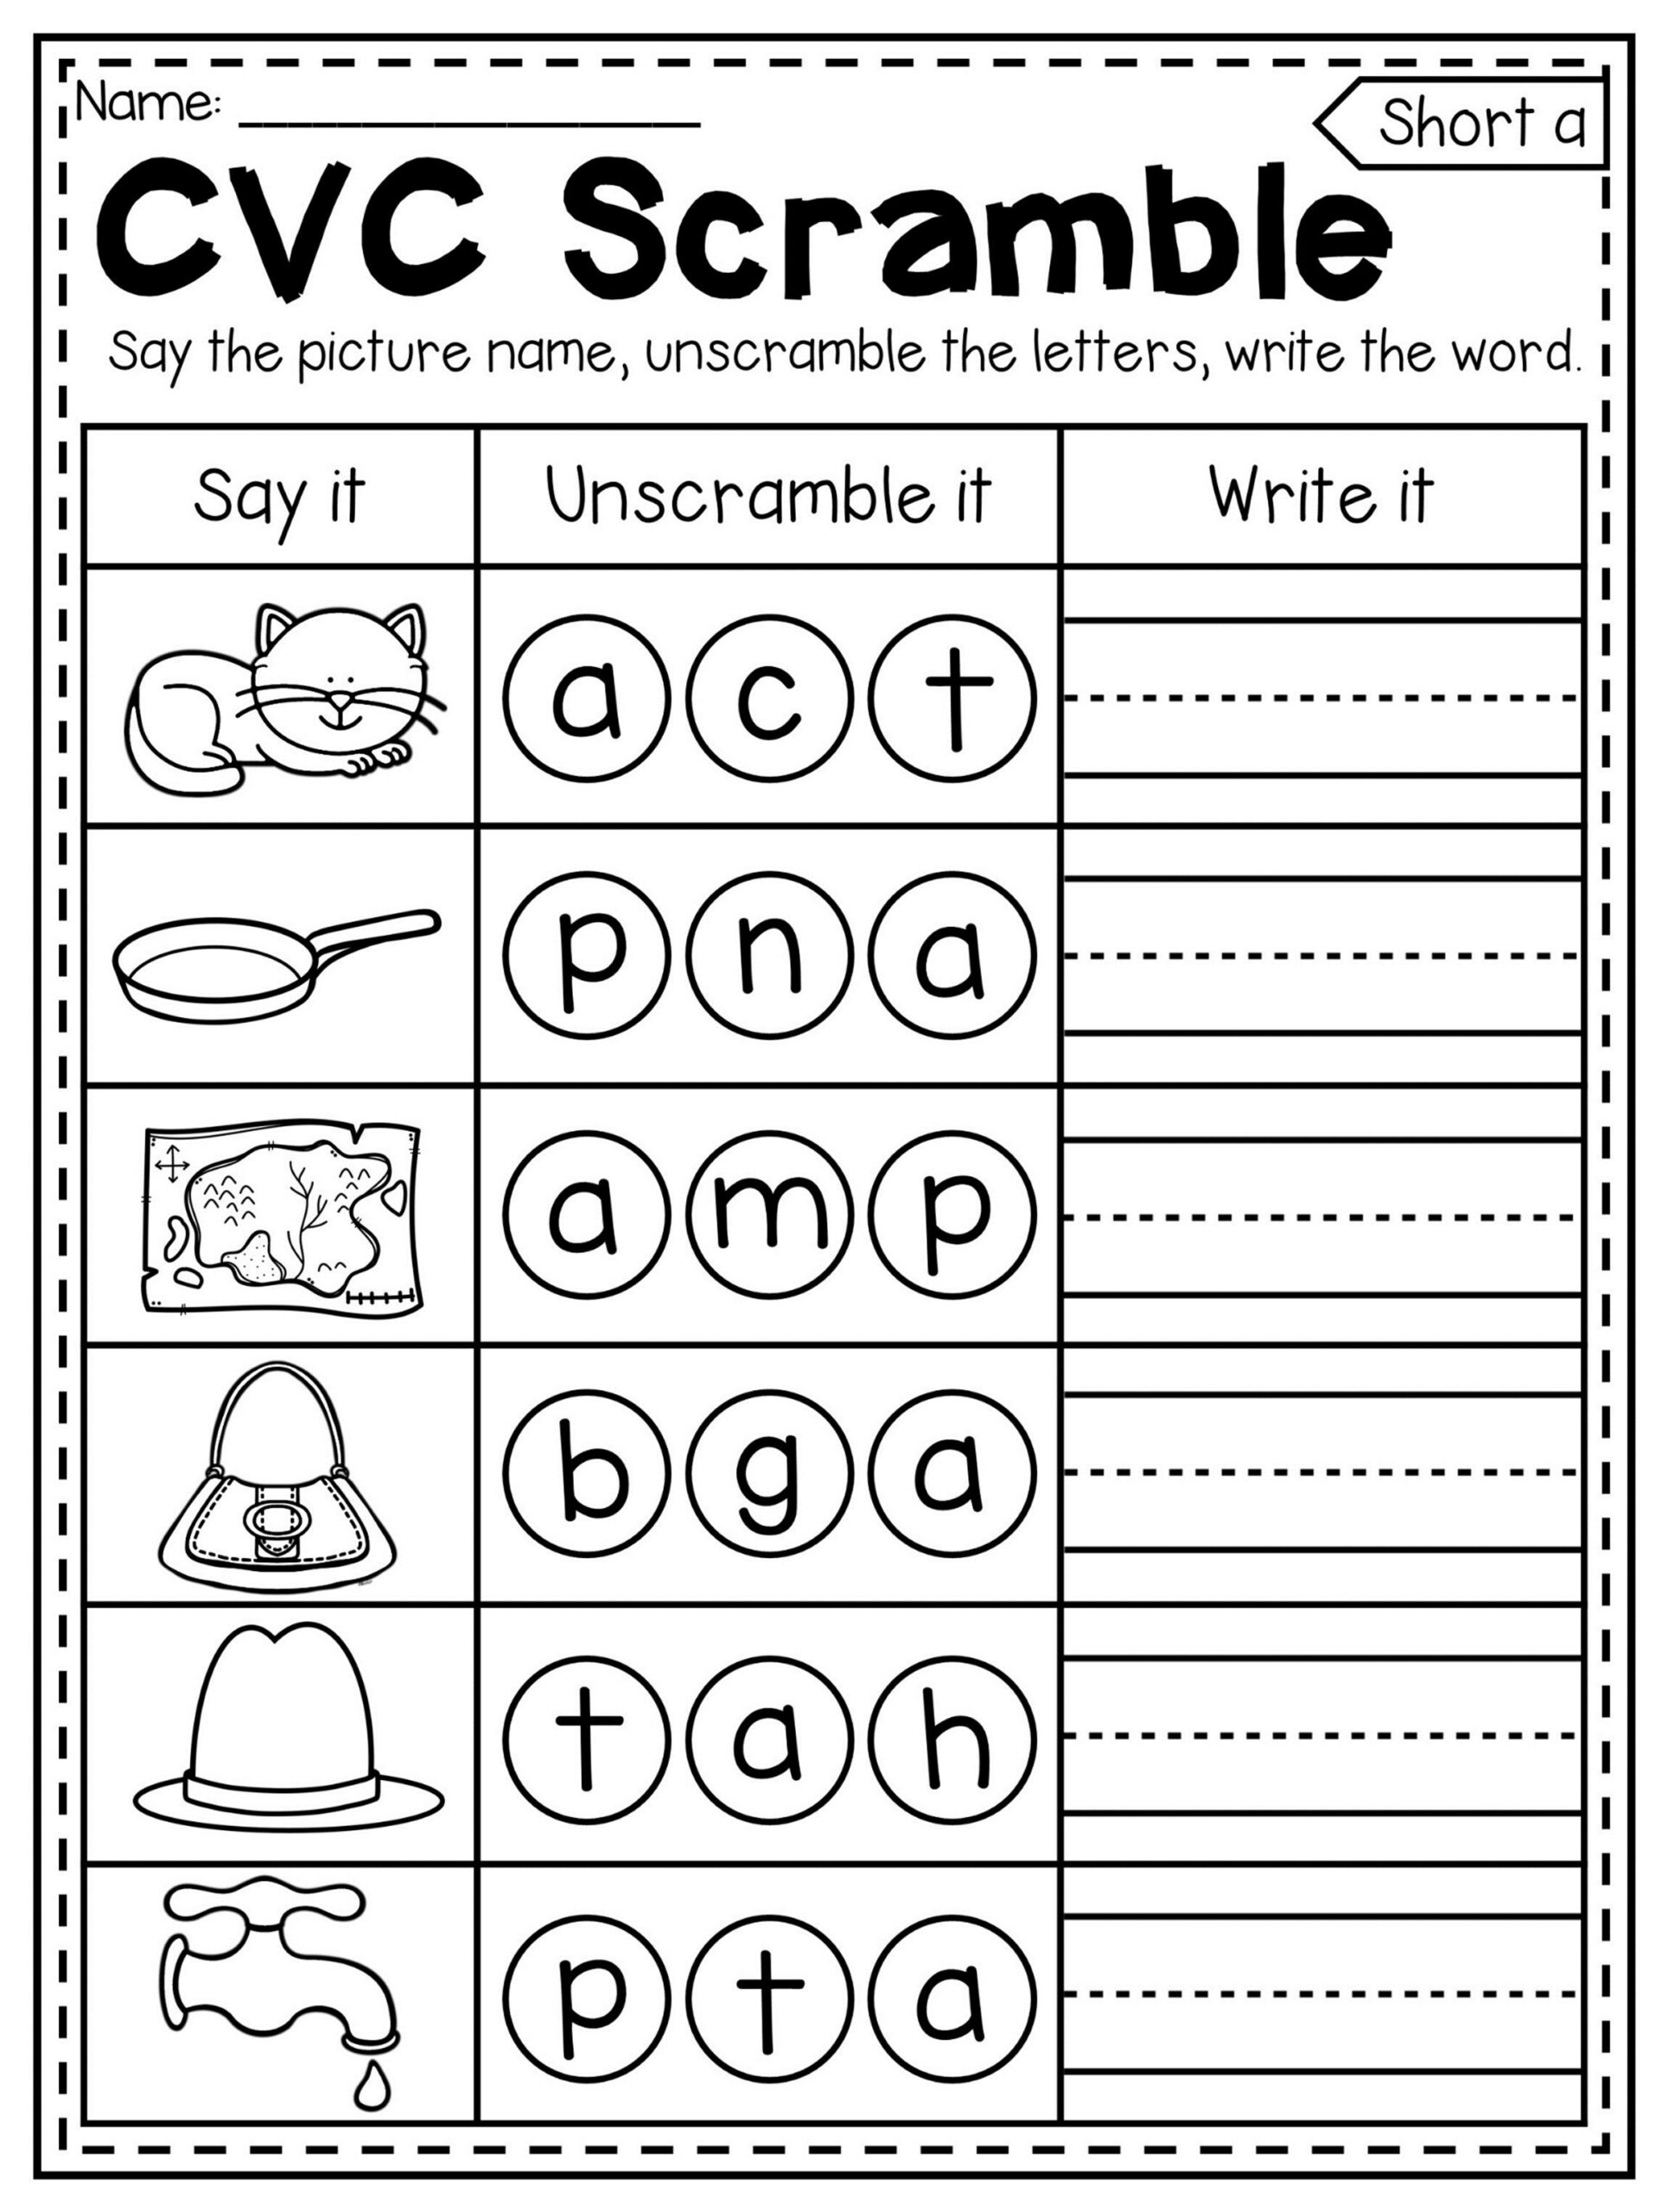 kindergarten-science-worksheets-free-printable-printable-worksheets